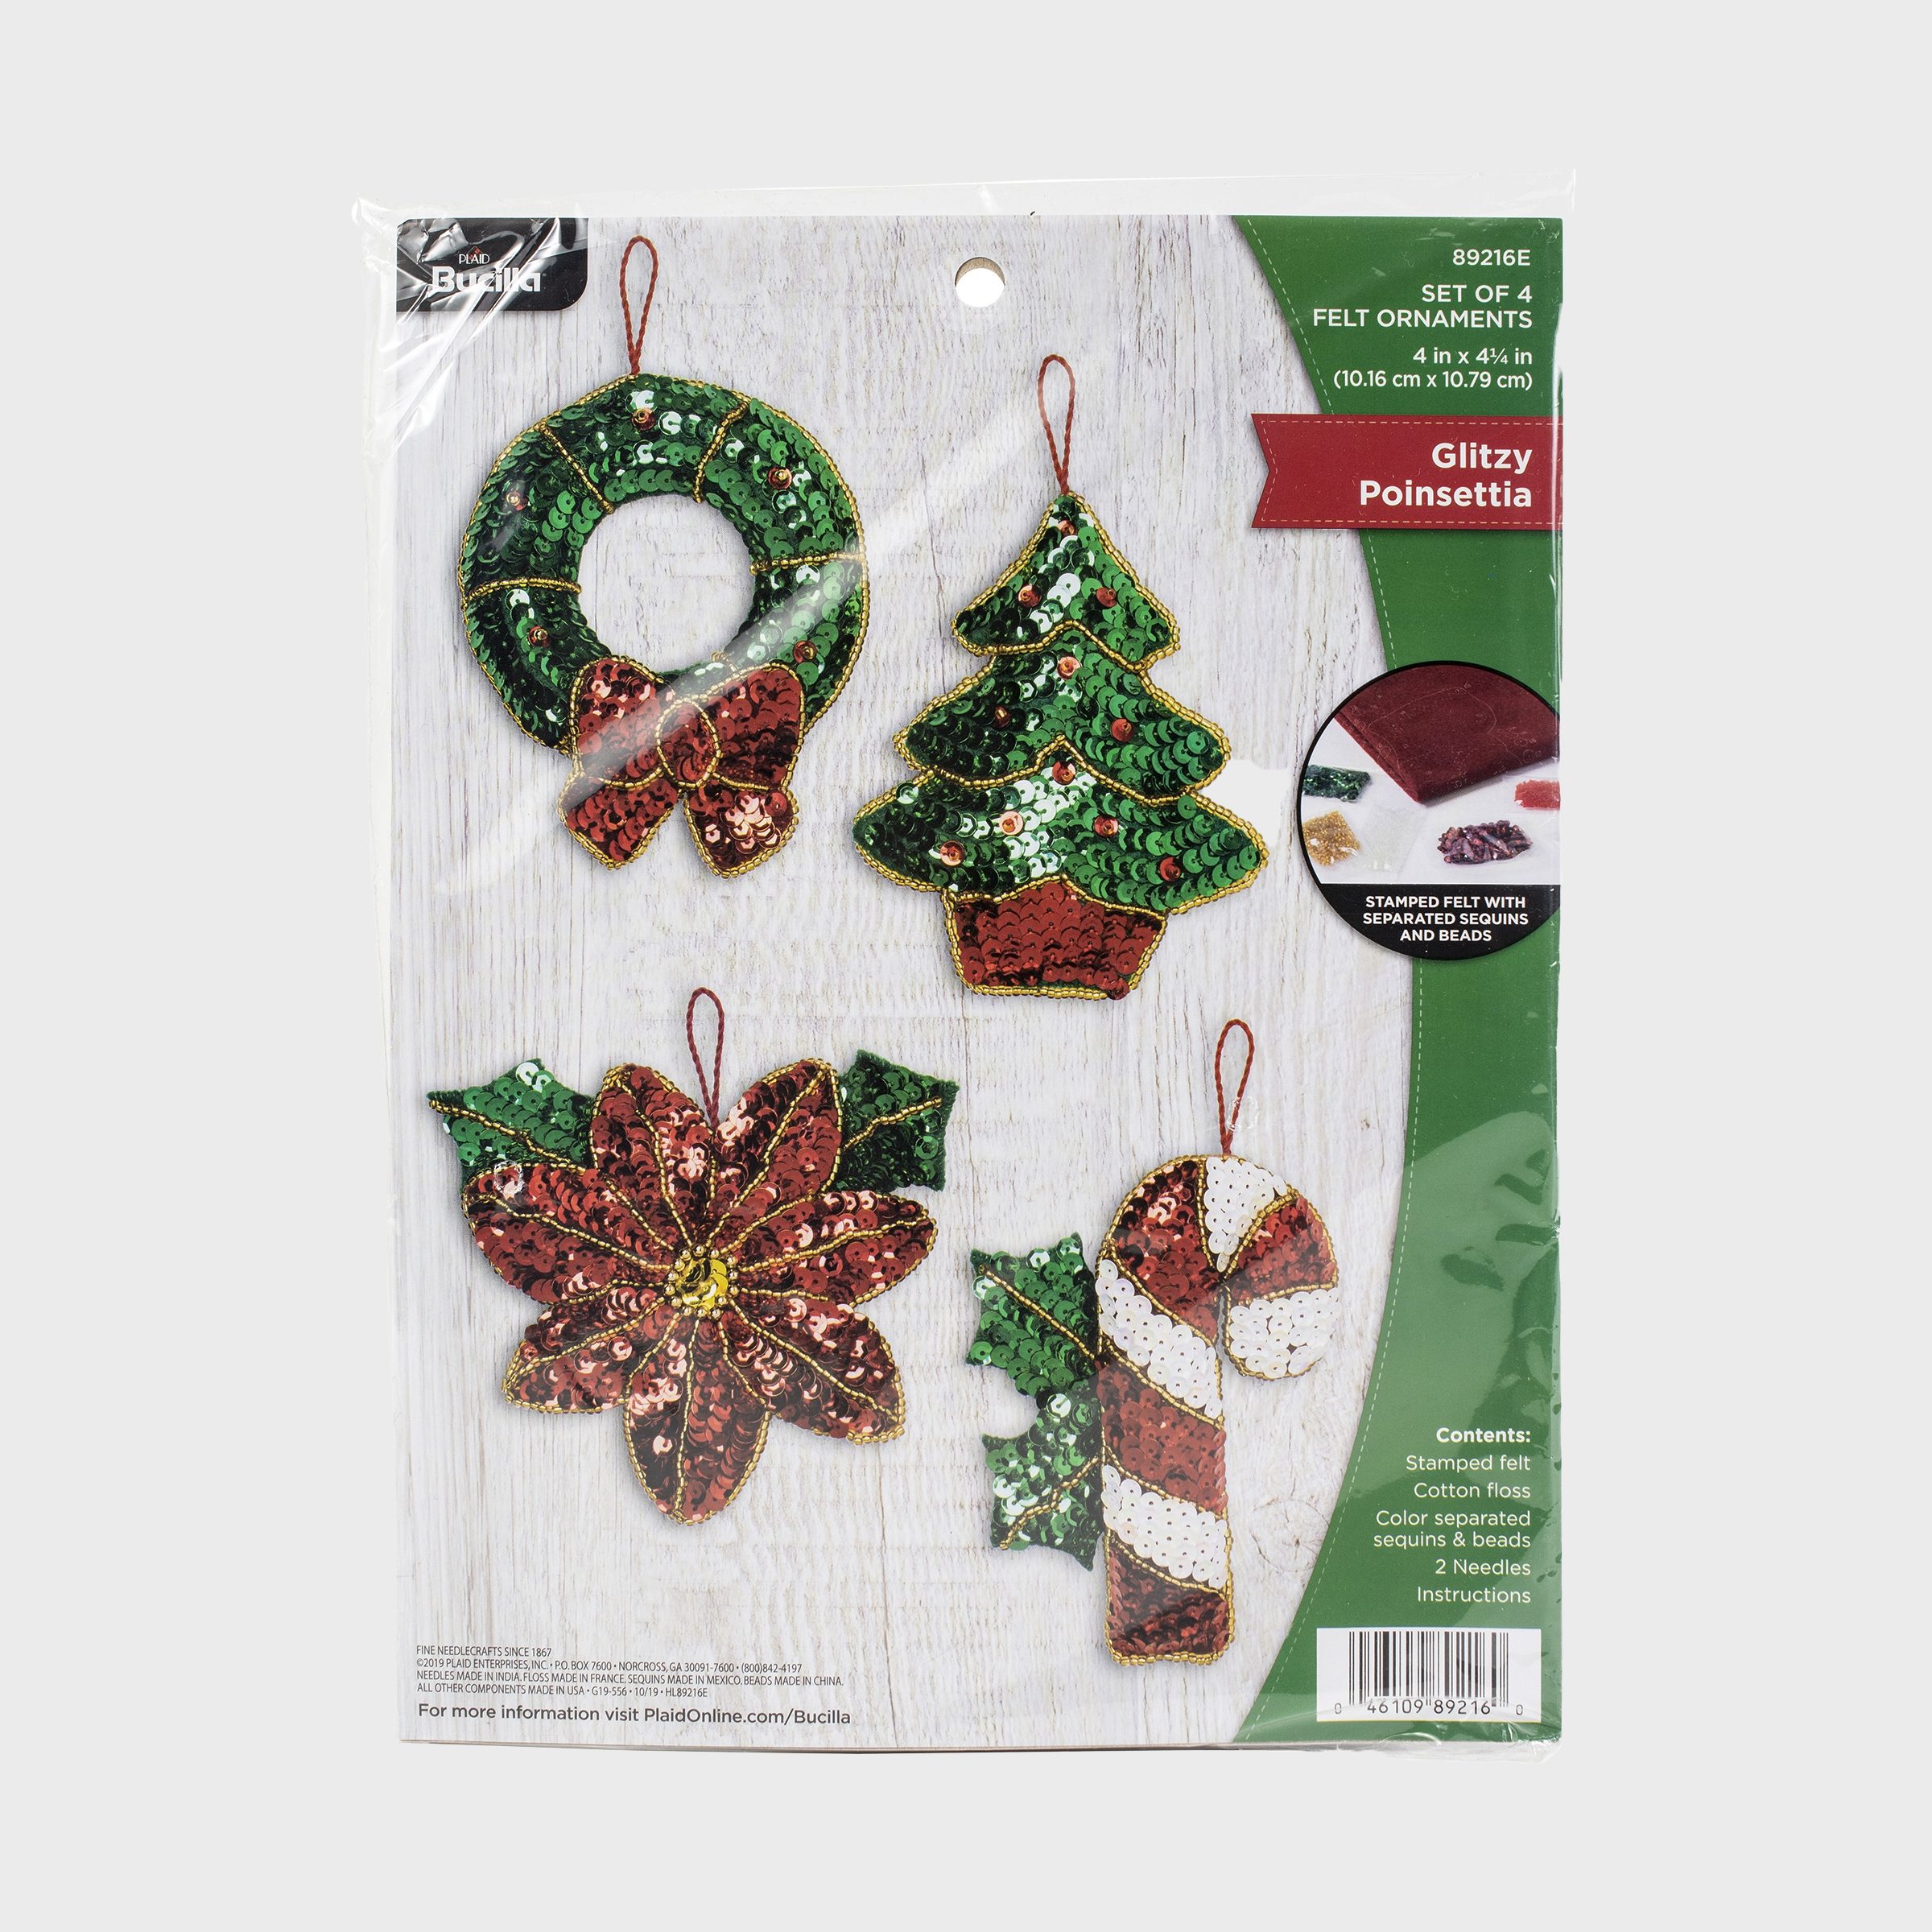 Handmade Beaded Wool Christmas Ornaments (set of 4) - Christmas Charms